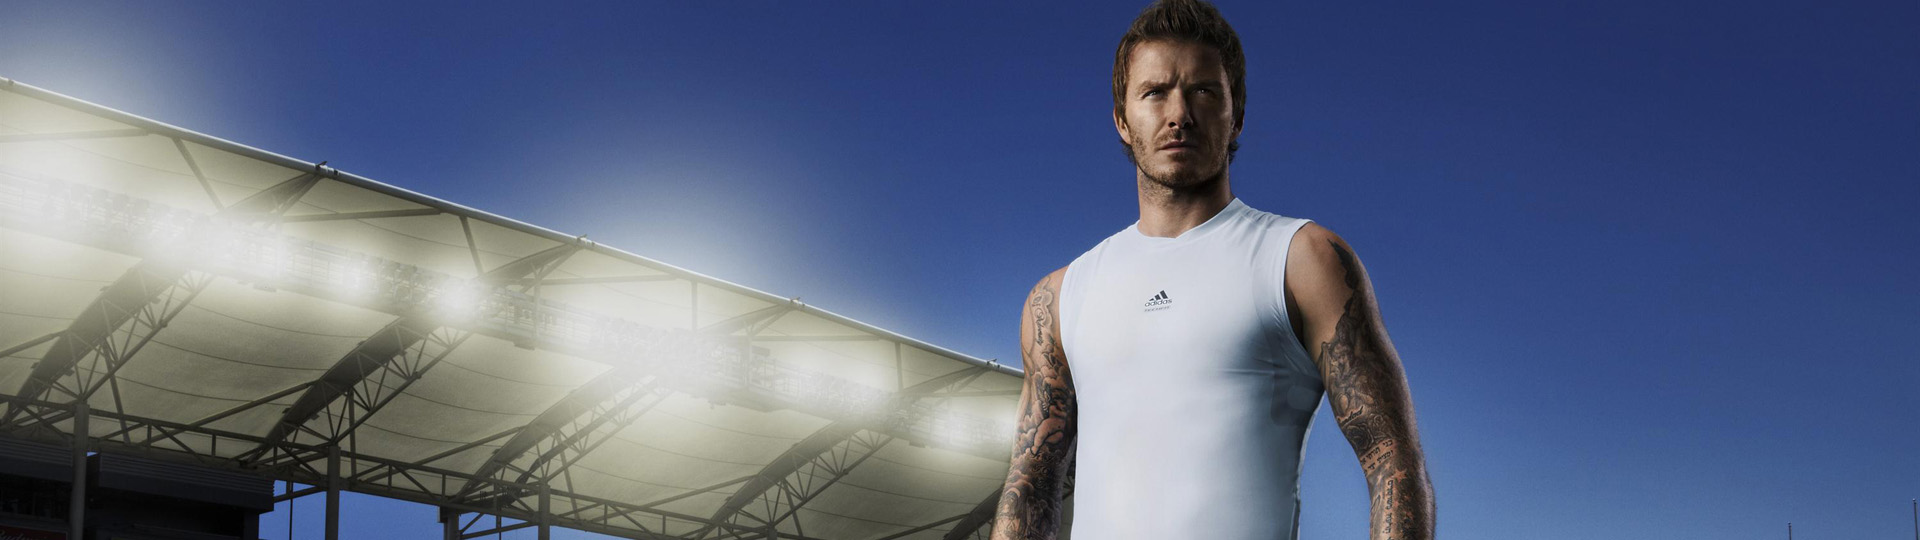 David Beckham faz flexões em jogo esportivo EA Sports Active